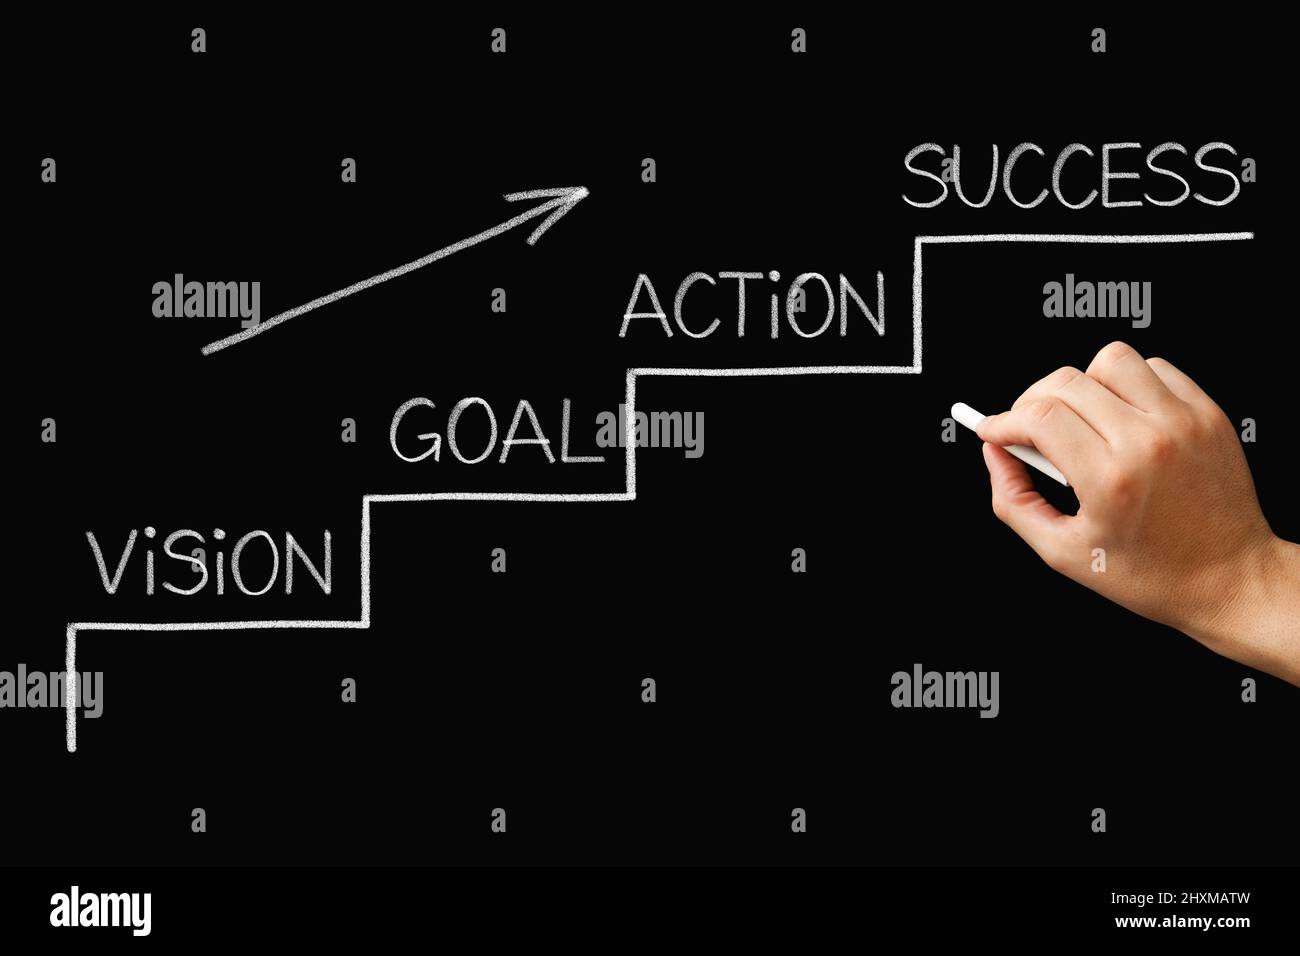 Mano dibujando una escalera al concepto del éxito con pasos de la visión a través del establecimiento de metas, la acción y el logro del éxito. Foto de stock